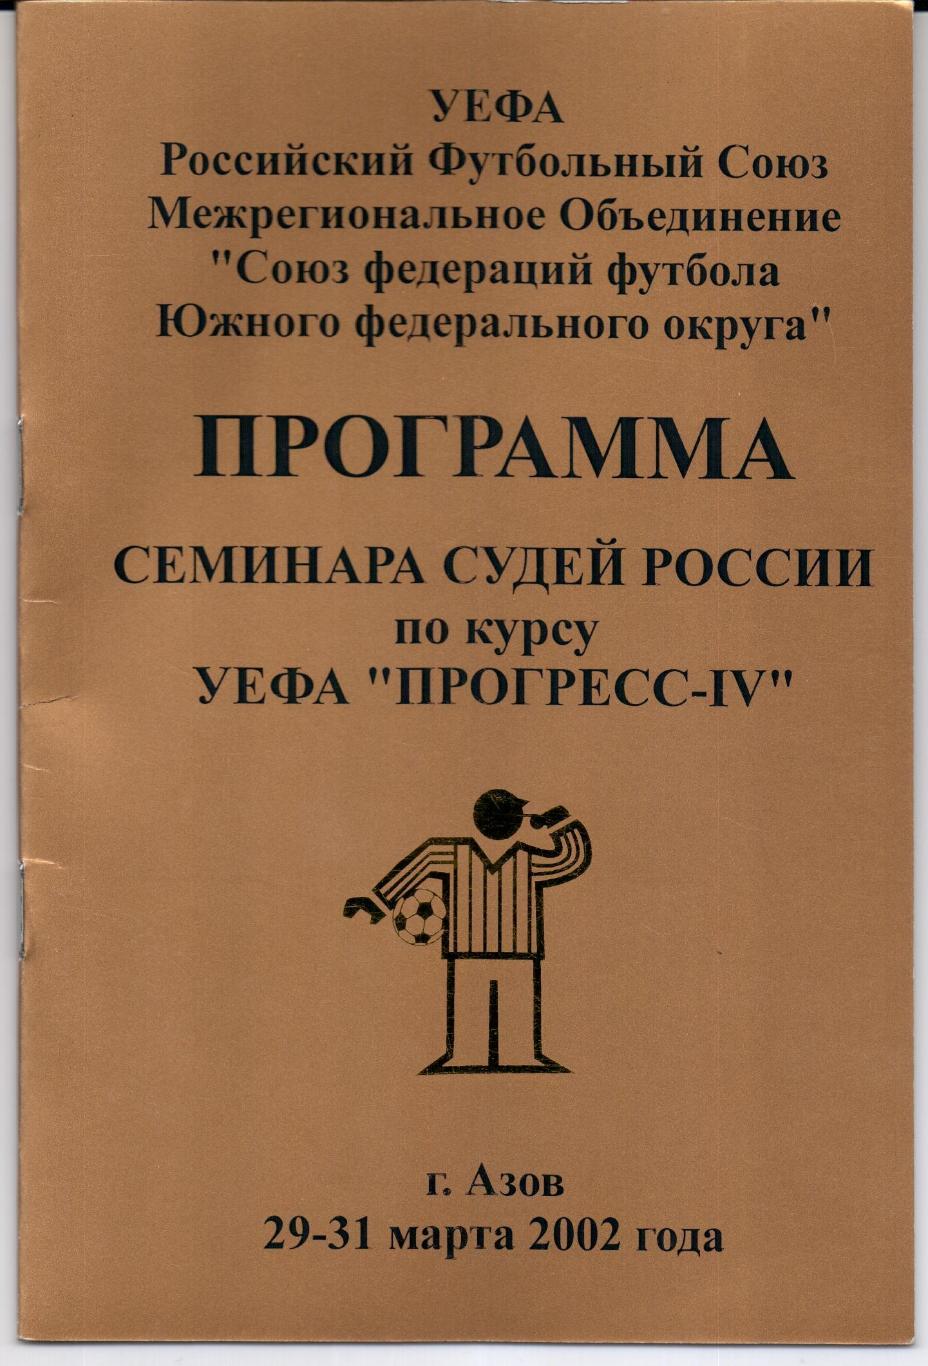 Программа семинара судей России по курсу УЕФА Прогресс-IV Азов 29-31.03.2002